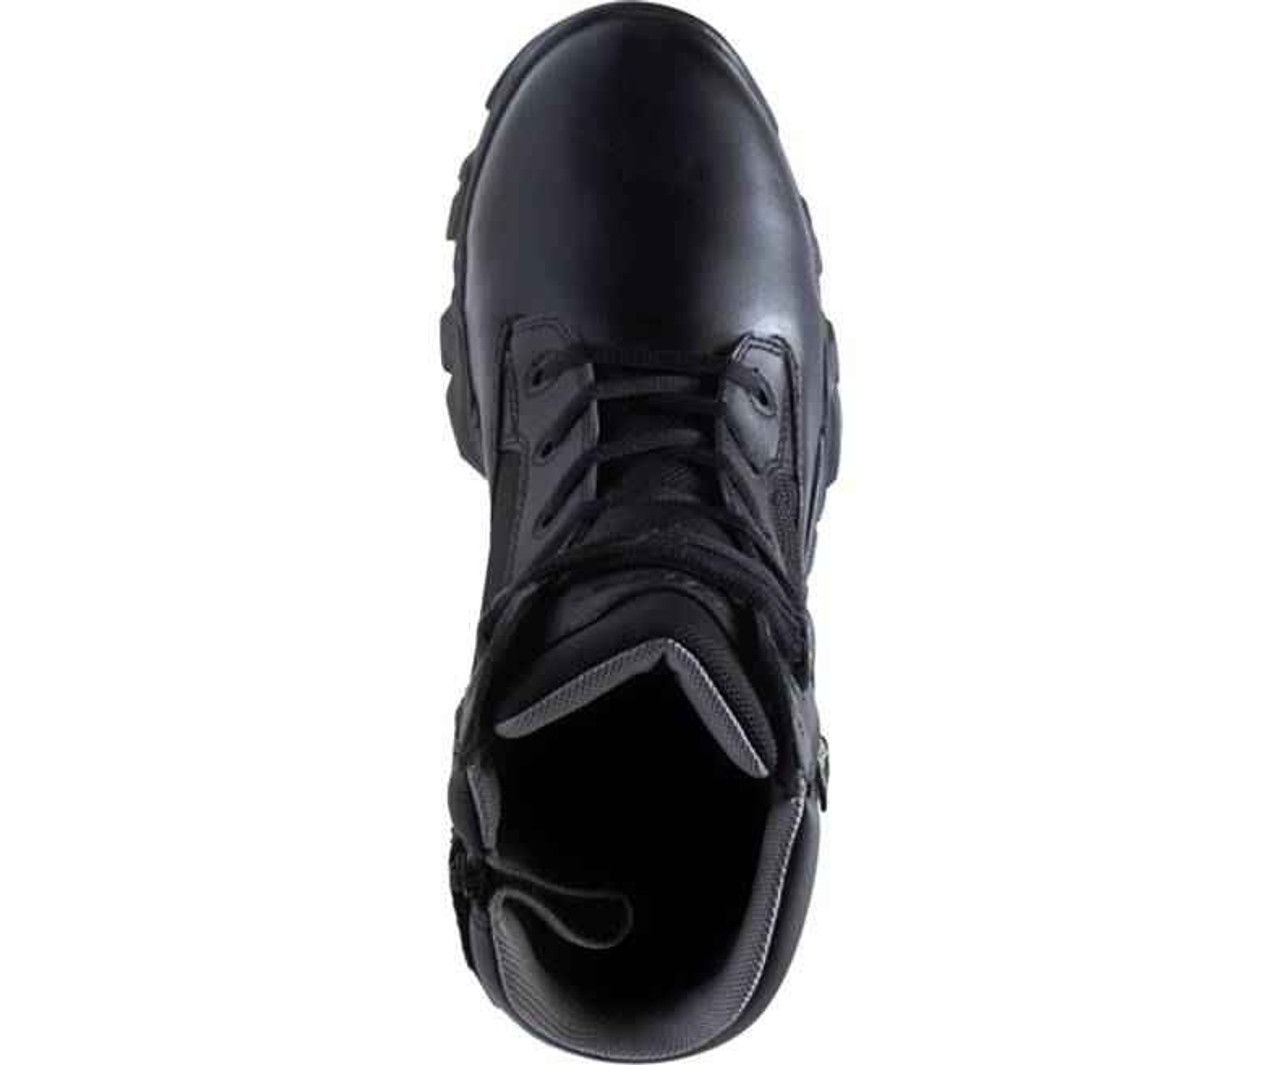 Bates Footwear GX-8 Gore-Tex Side Zip Women's Boots 2788